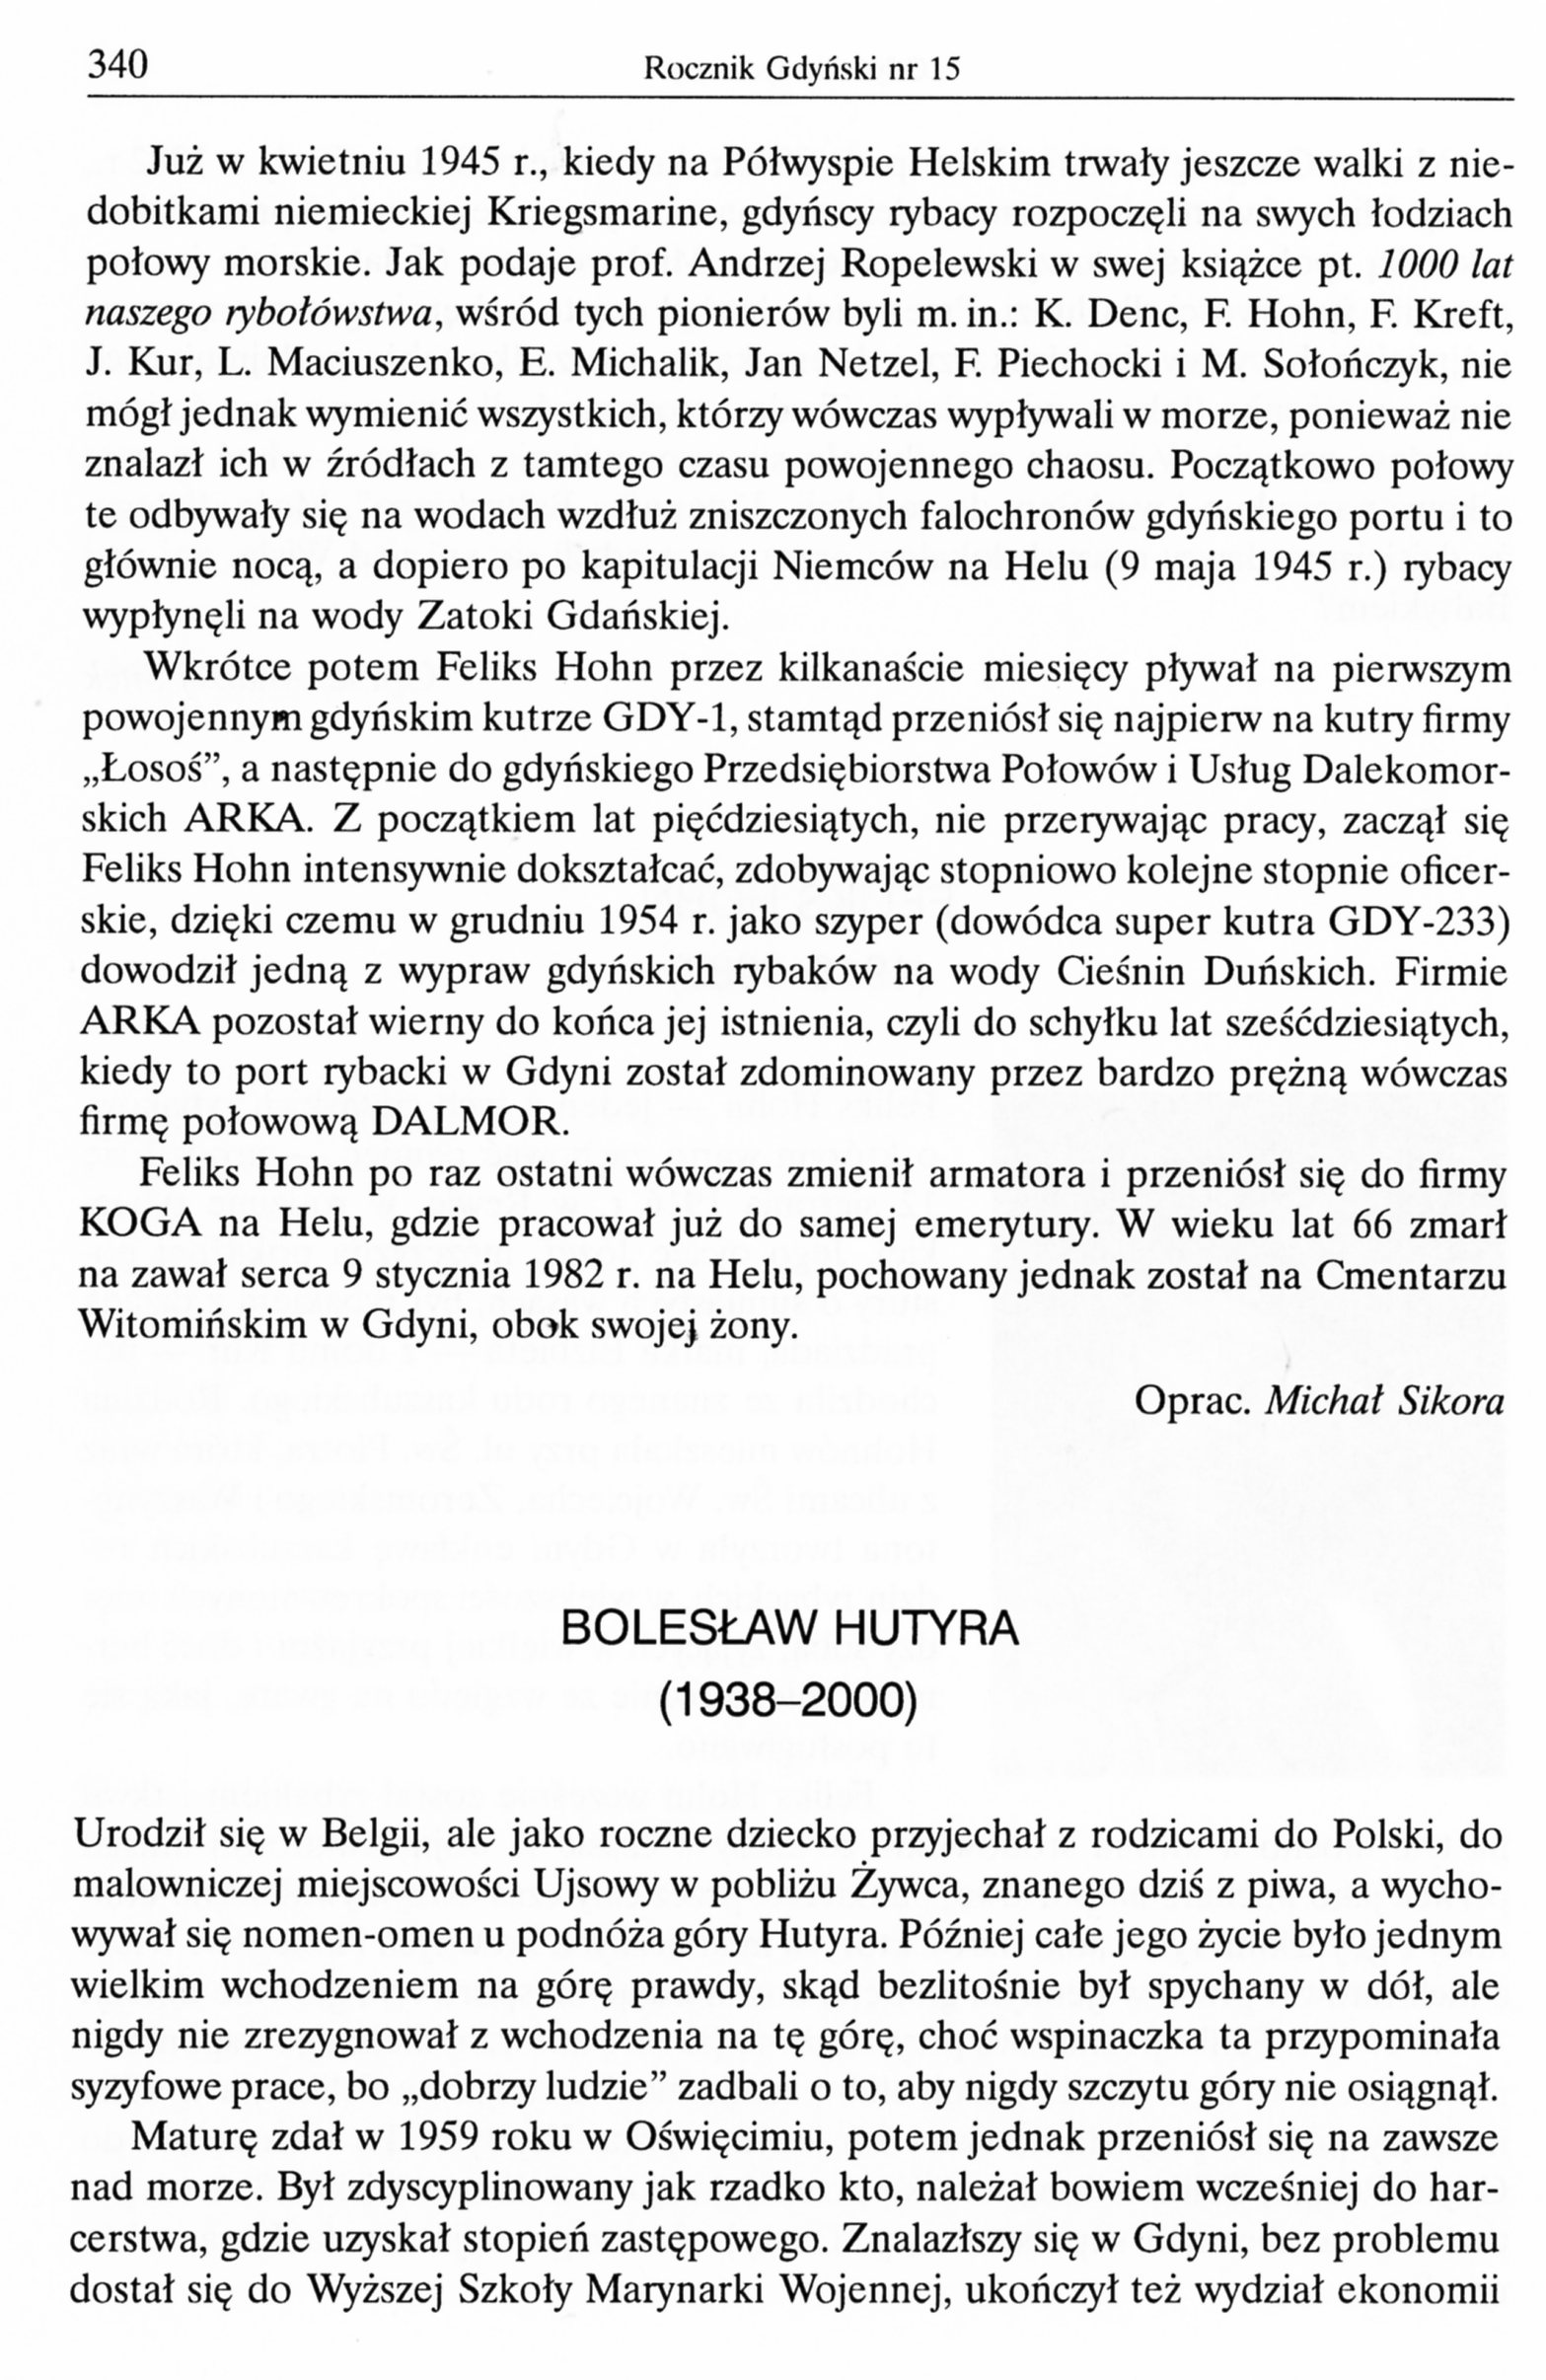 Bolesław Hutyra (1938-2000)